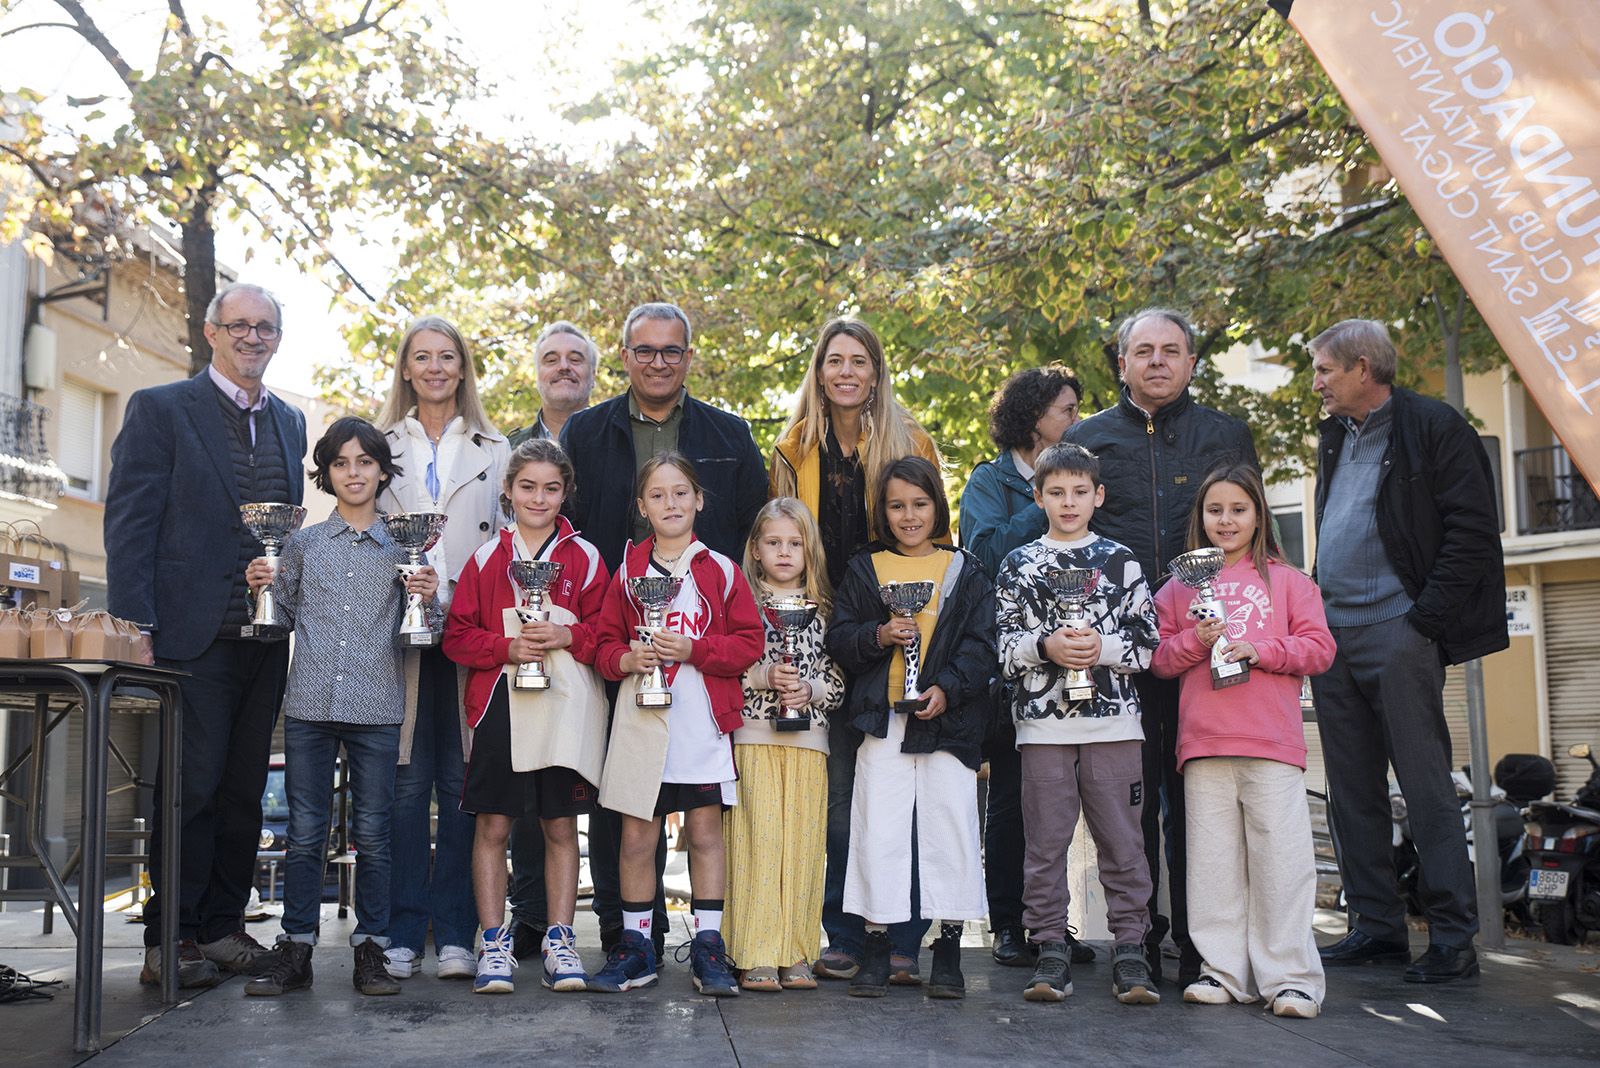 Els 4 guanyadors dels premis especials (Sprint Idiomes, Cugat Media, TOT Sant Cugat i TV Sant Cugat) en l'entrega de premis de la Marxa Infantil. FOTO: Bernat Millet